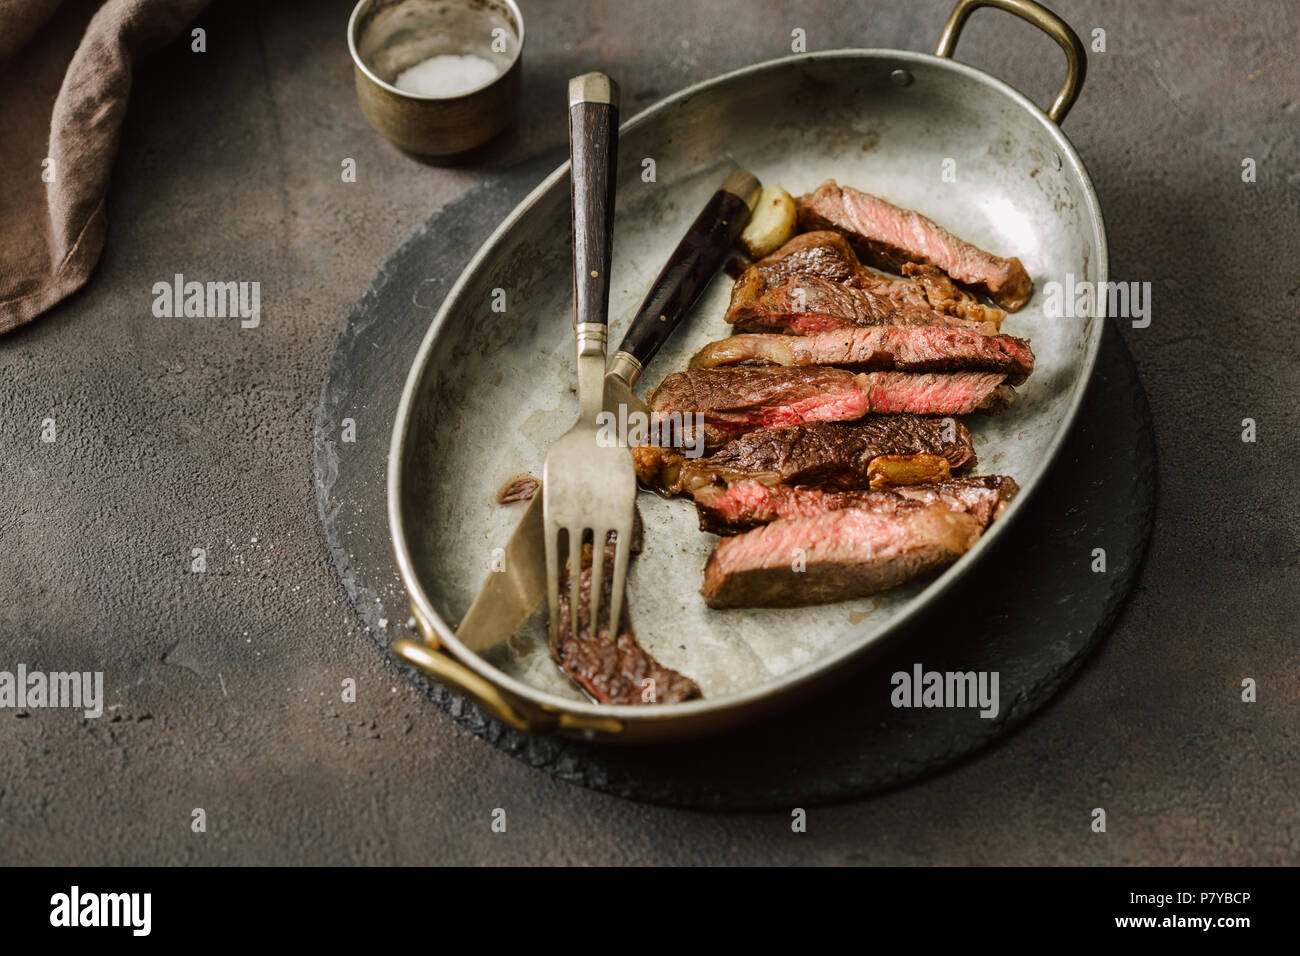 Scheiben saftigen Roastbeef Steak auf vintage Pfanne Stockfotografie - Alamy